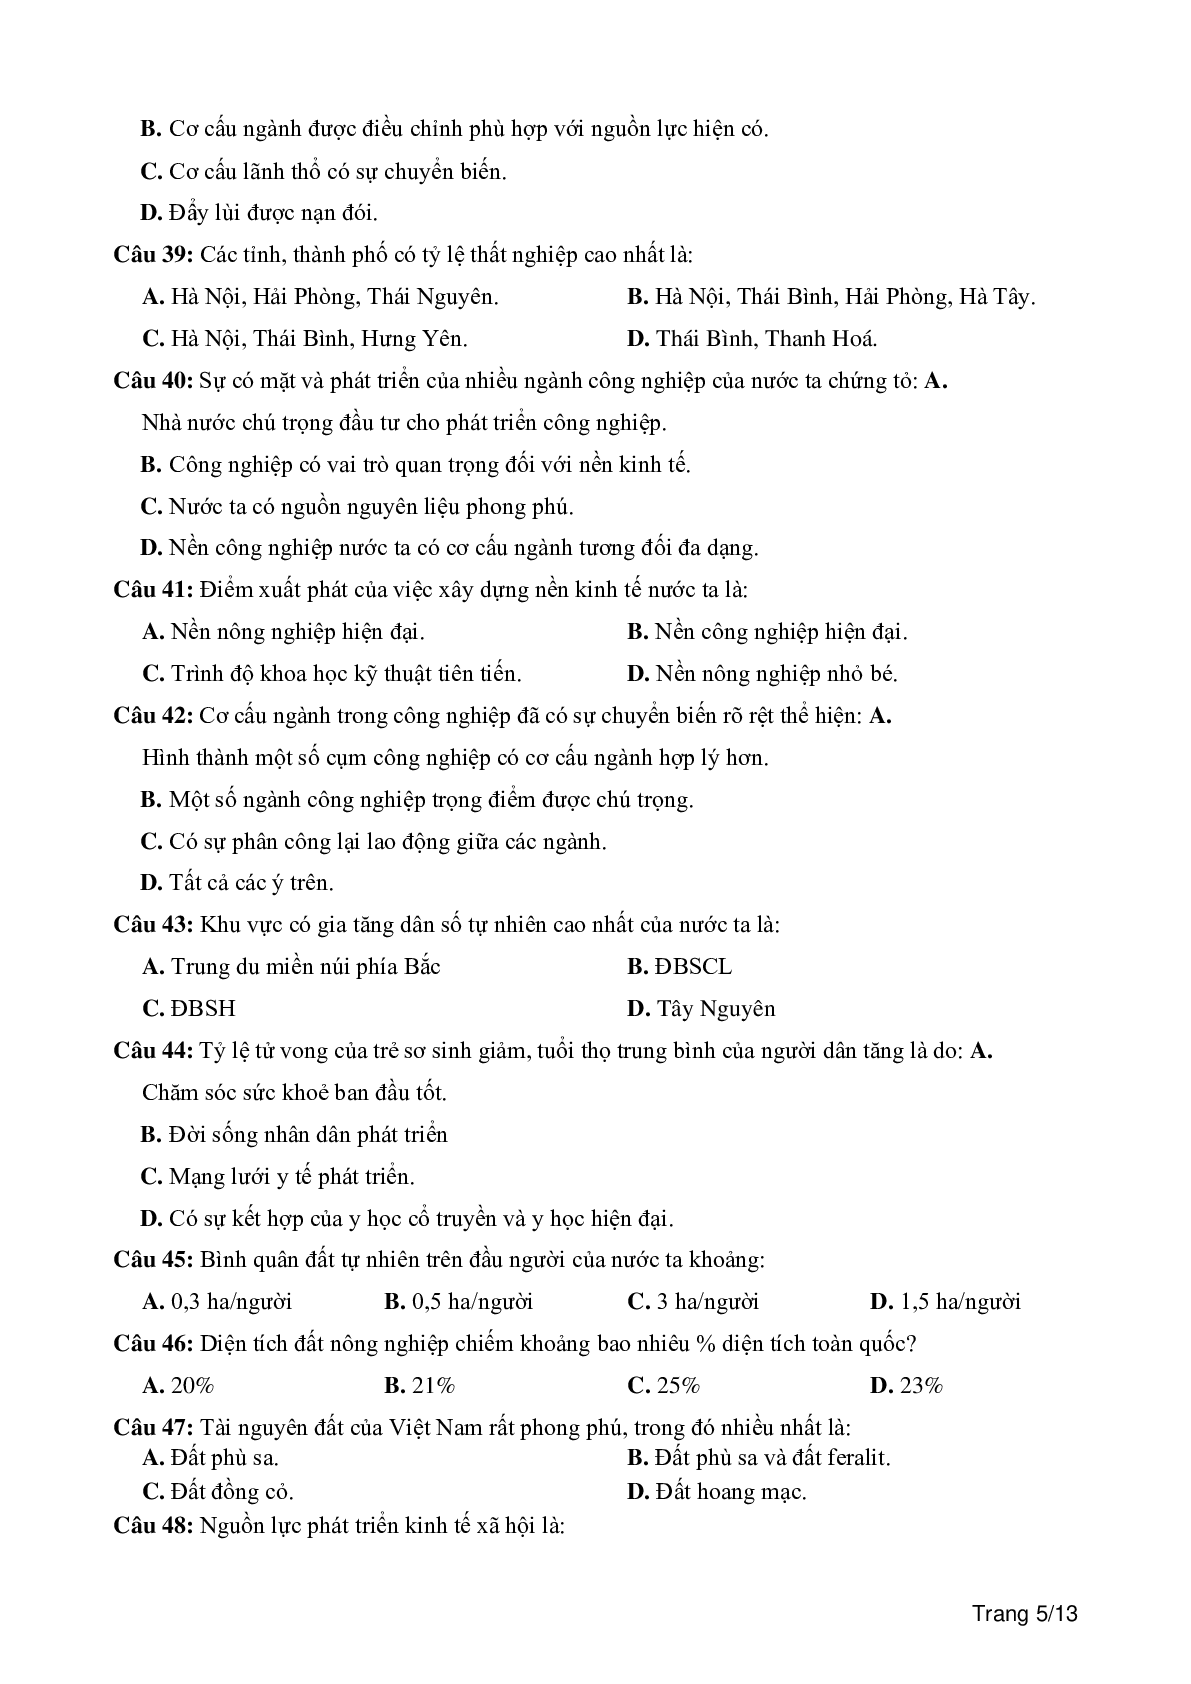 100 câu trắc nghiệm khách quan môn Địa lí lớp 12 (trang 5)